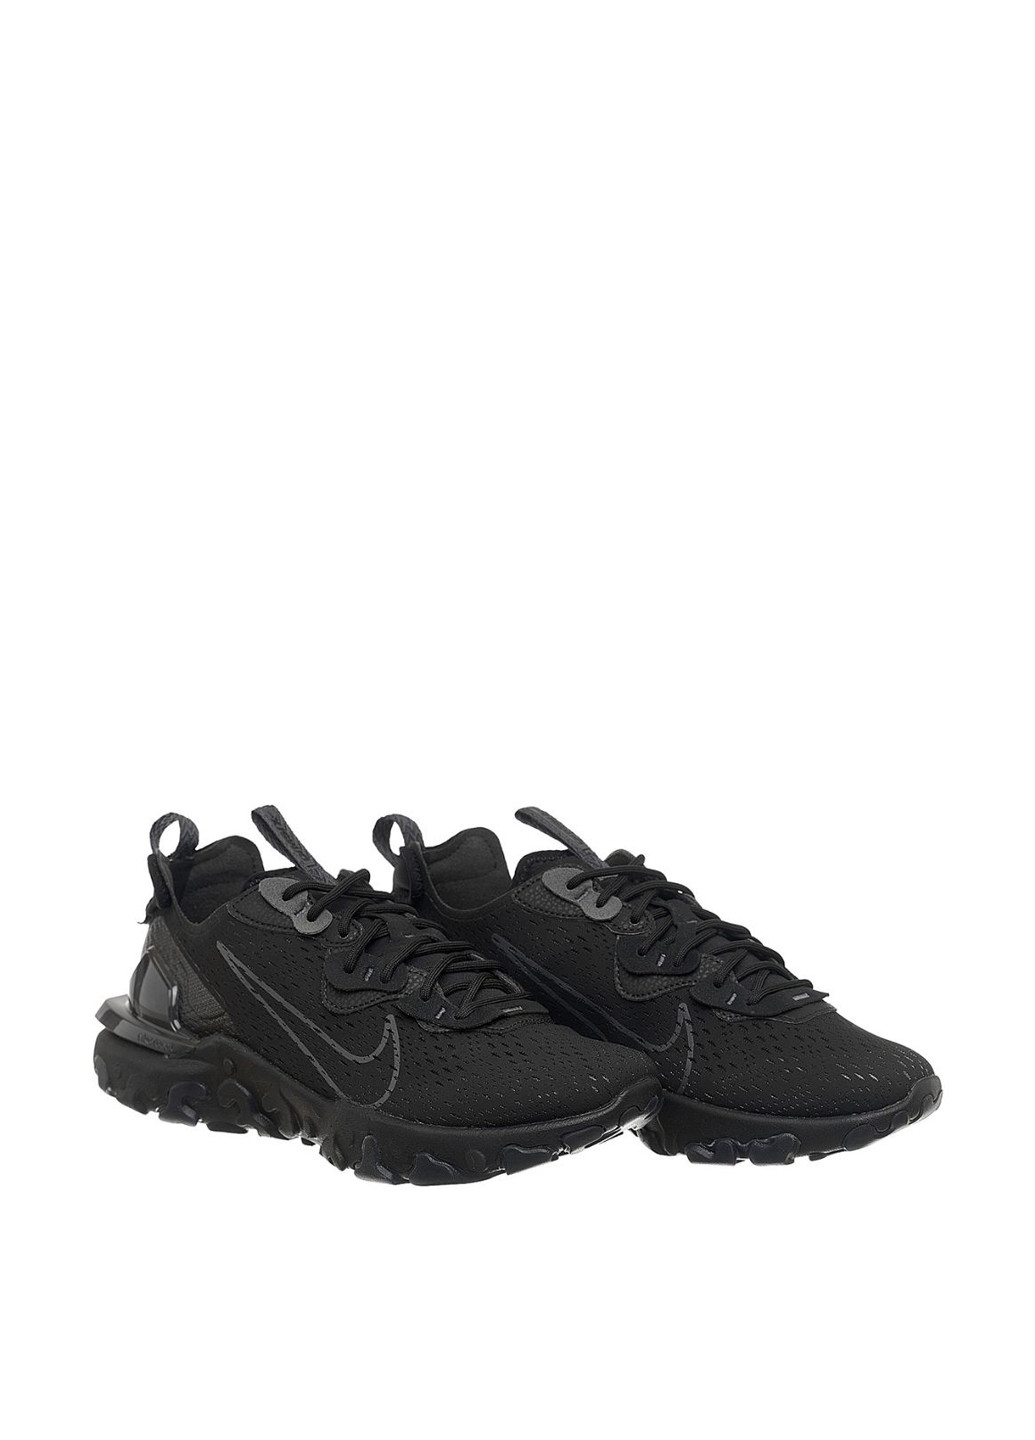 Черные демисезонные кроссовки cd4373-004_2024 Nike REACT VISION